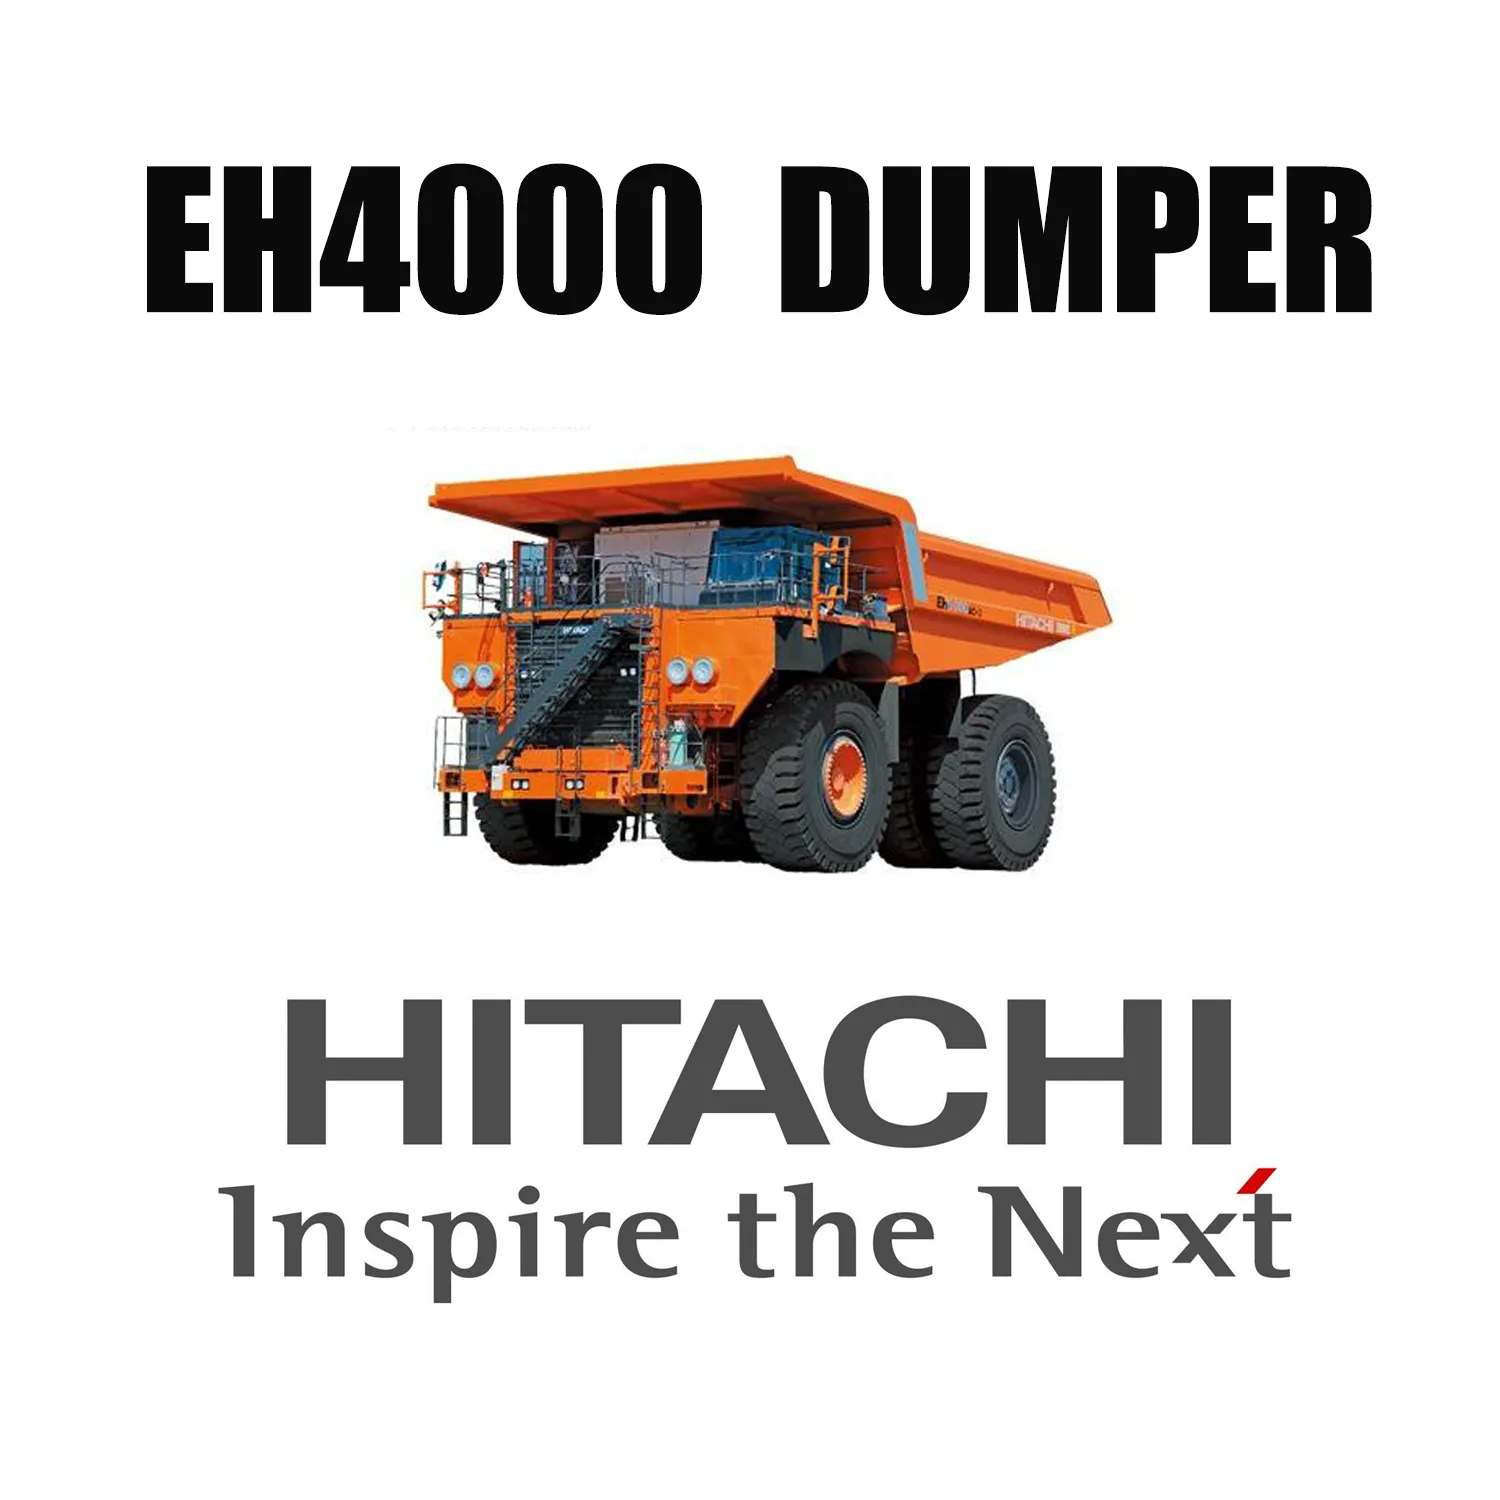 Truk Dump Kaku HITACHI EH4000 Dilengkapi dengan Ban Pertambangan Earthmover 46/90R57